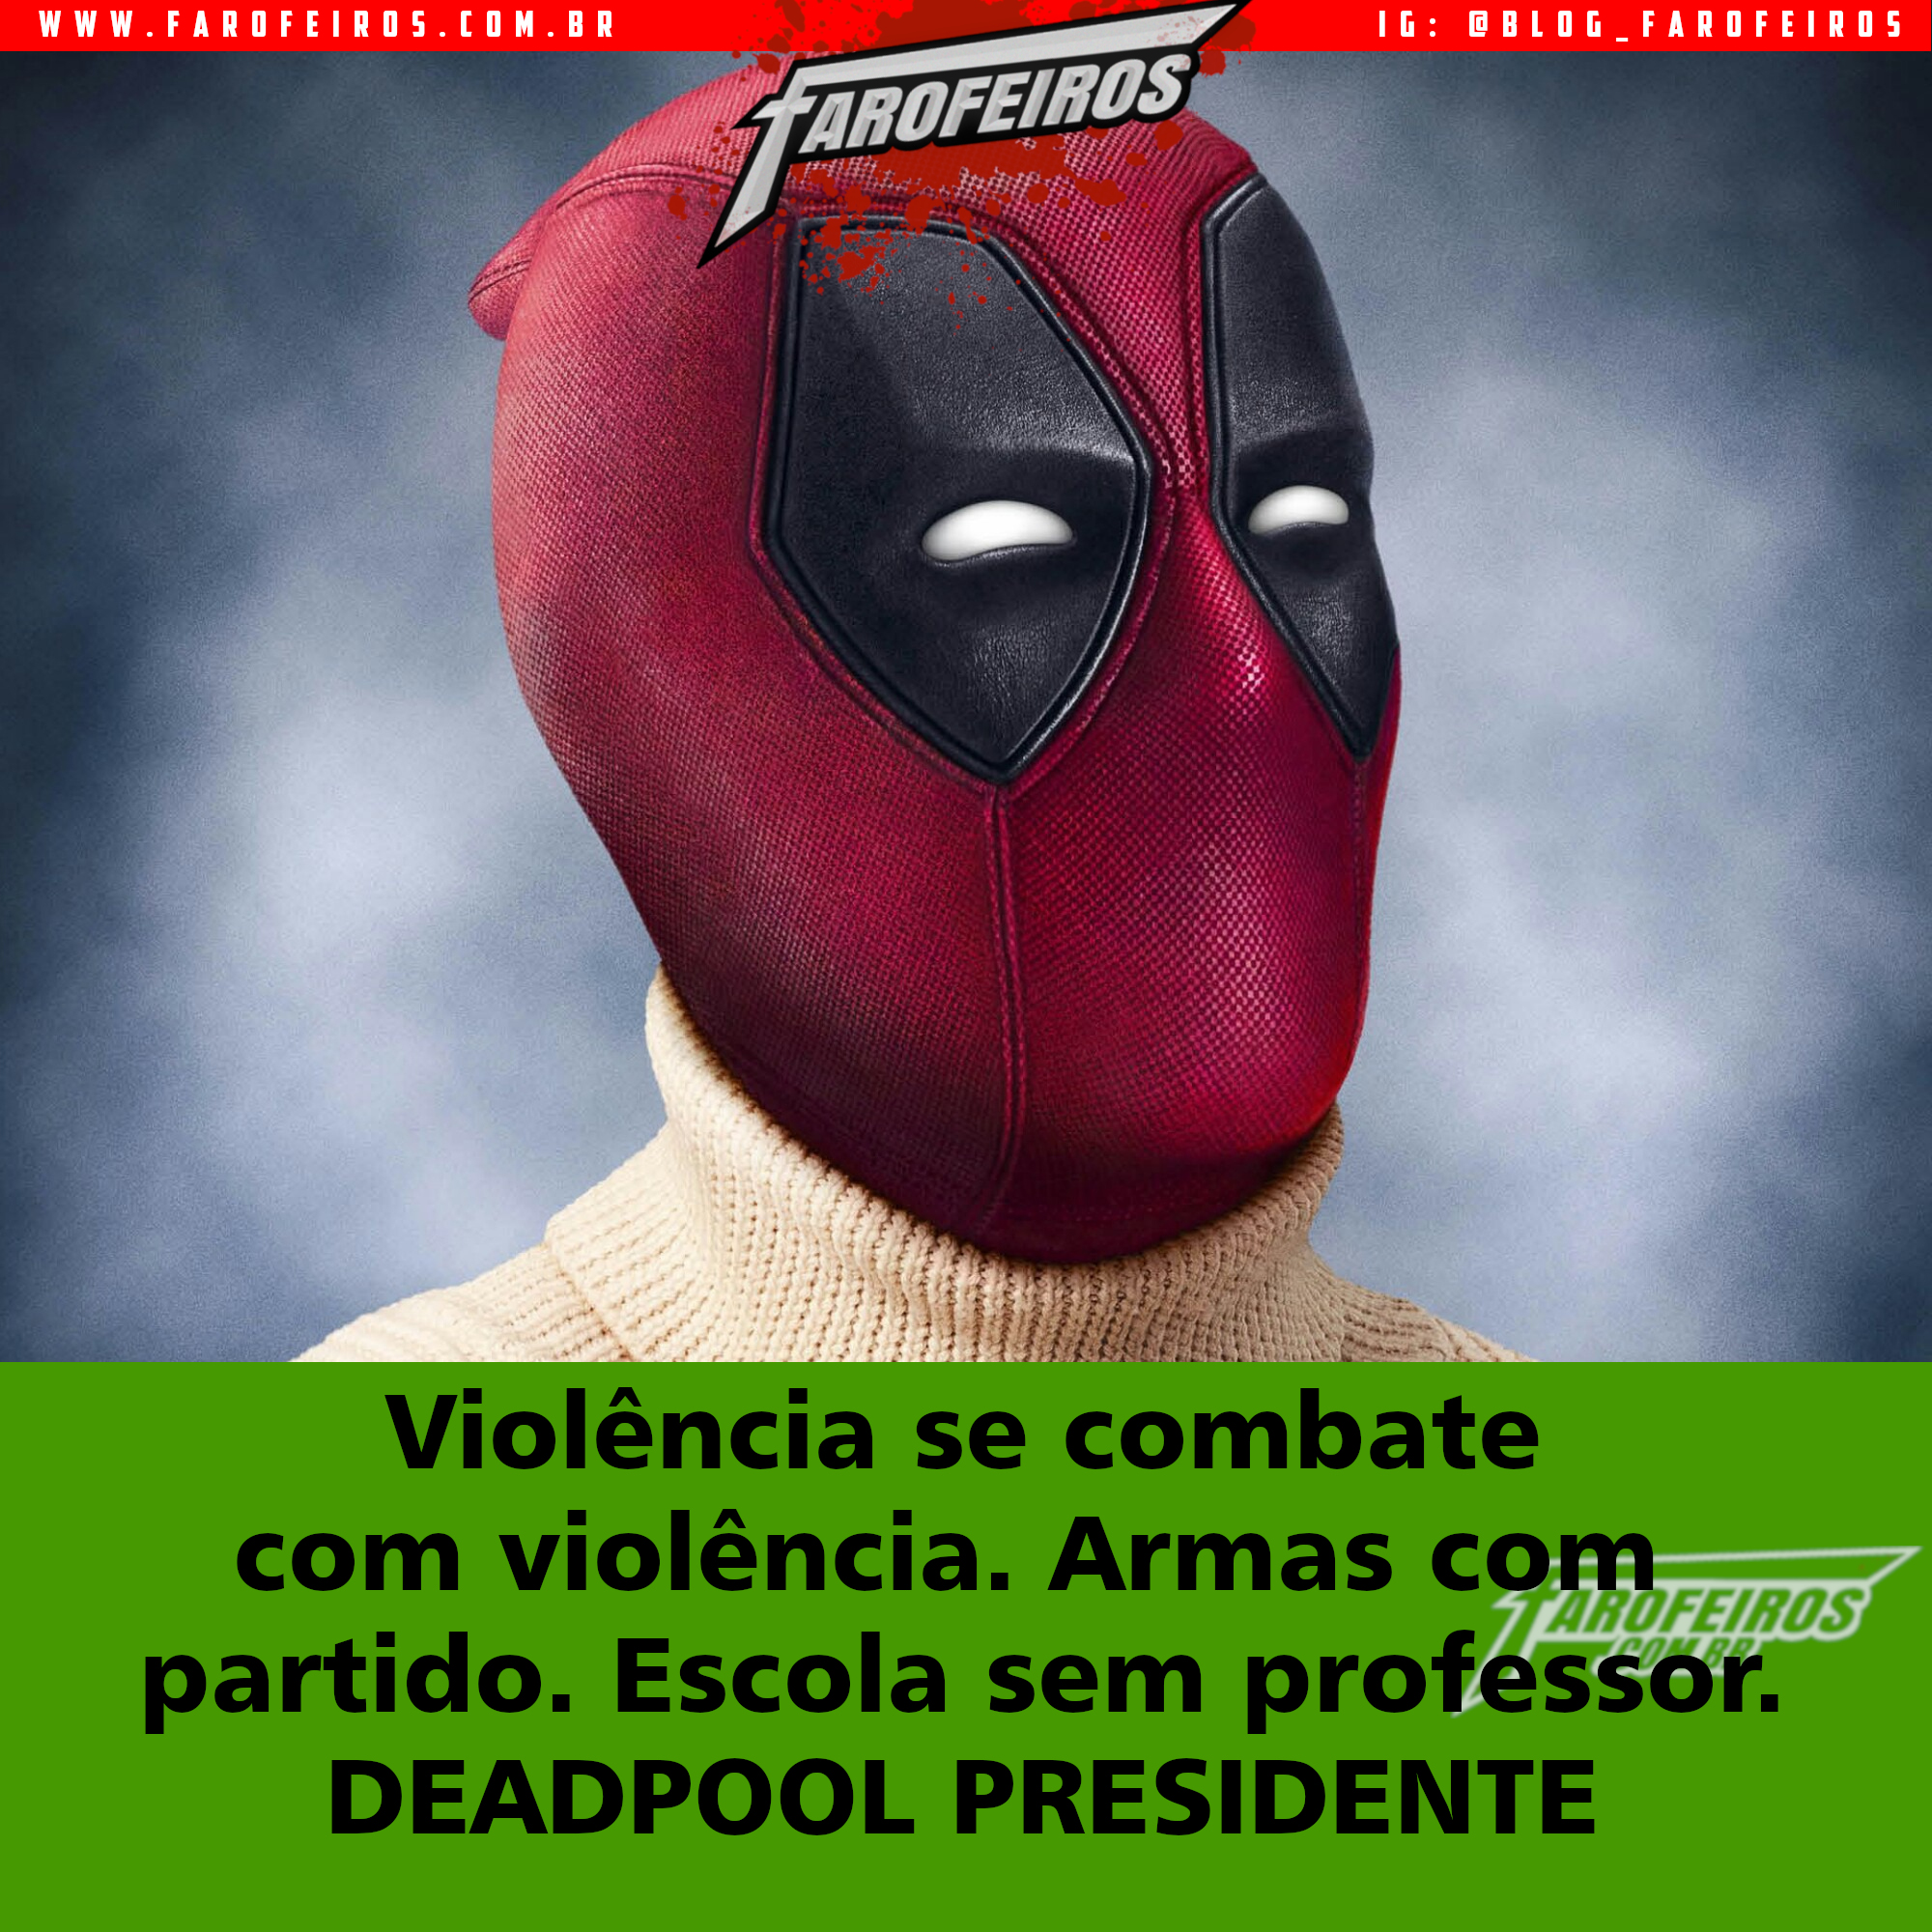 Super Eleições 2018 - Farofeiros com br - Deadpool